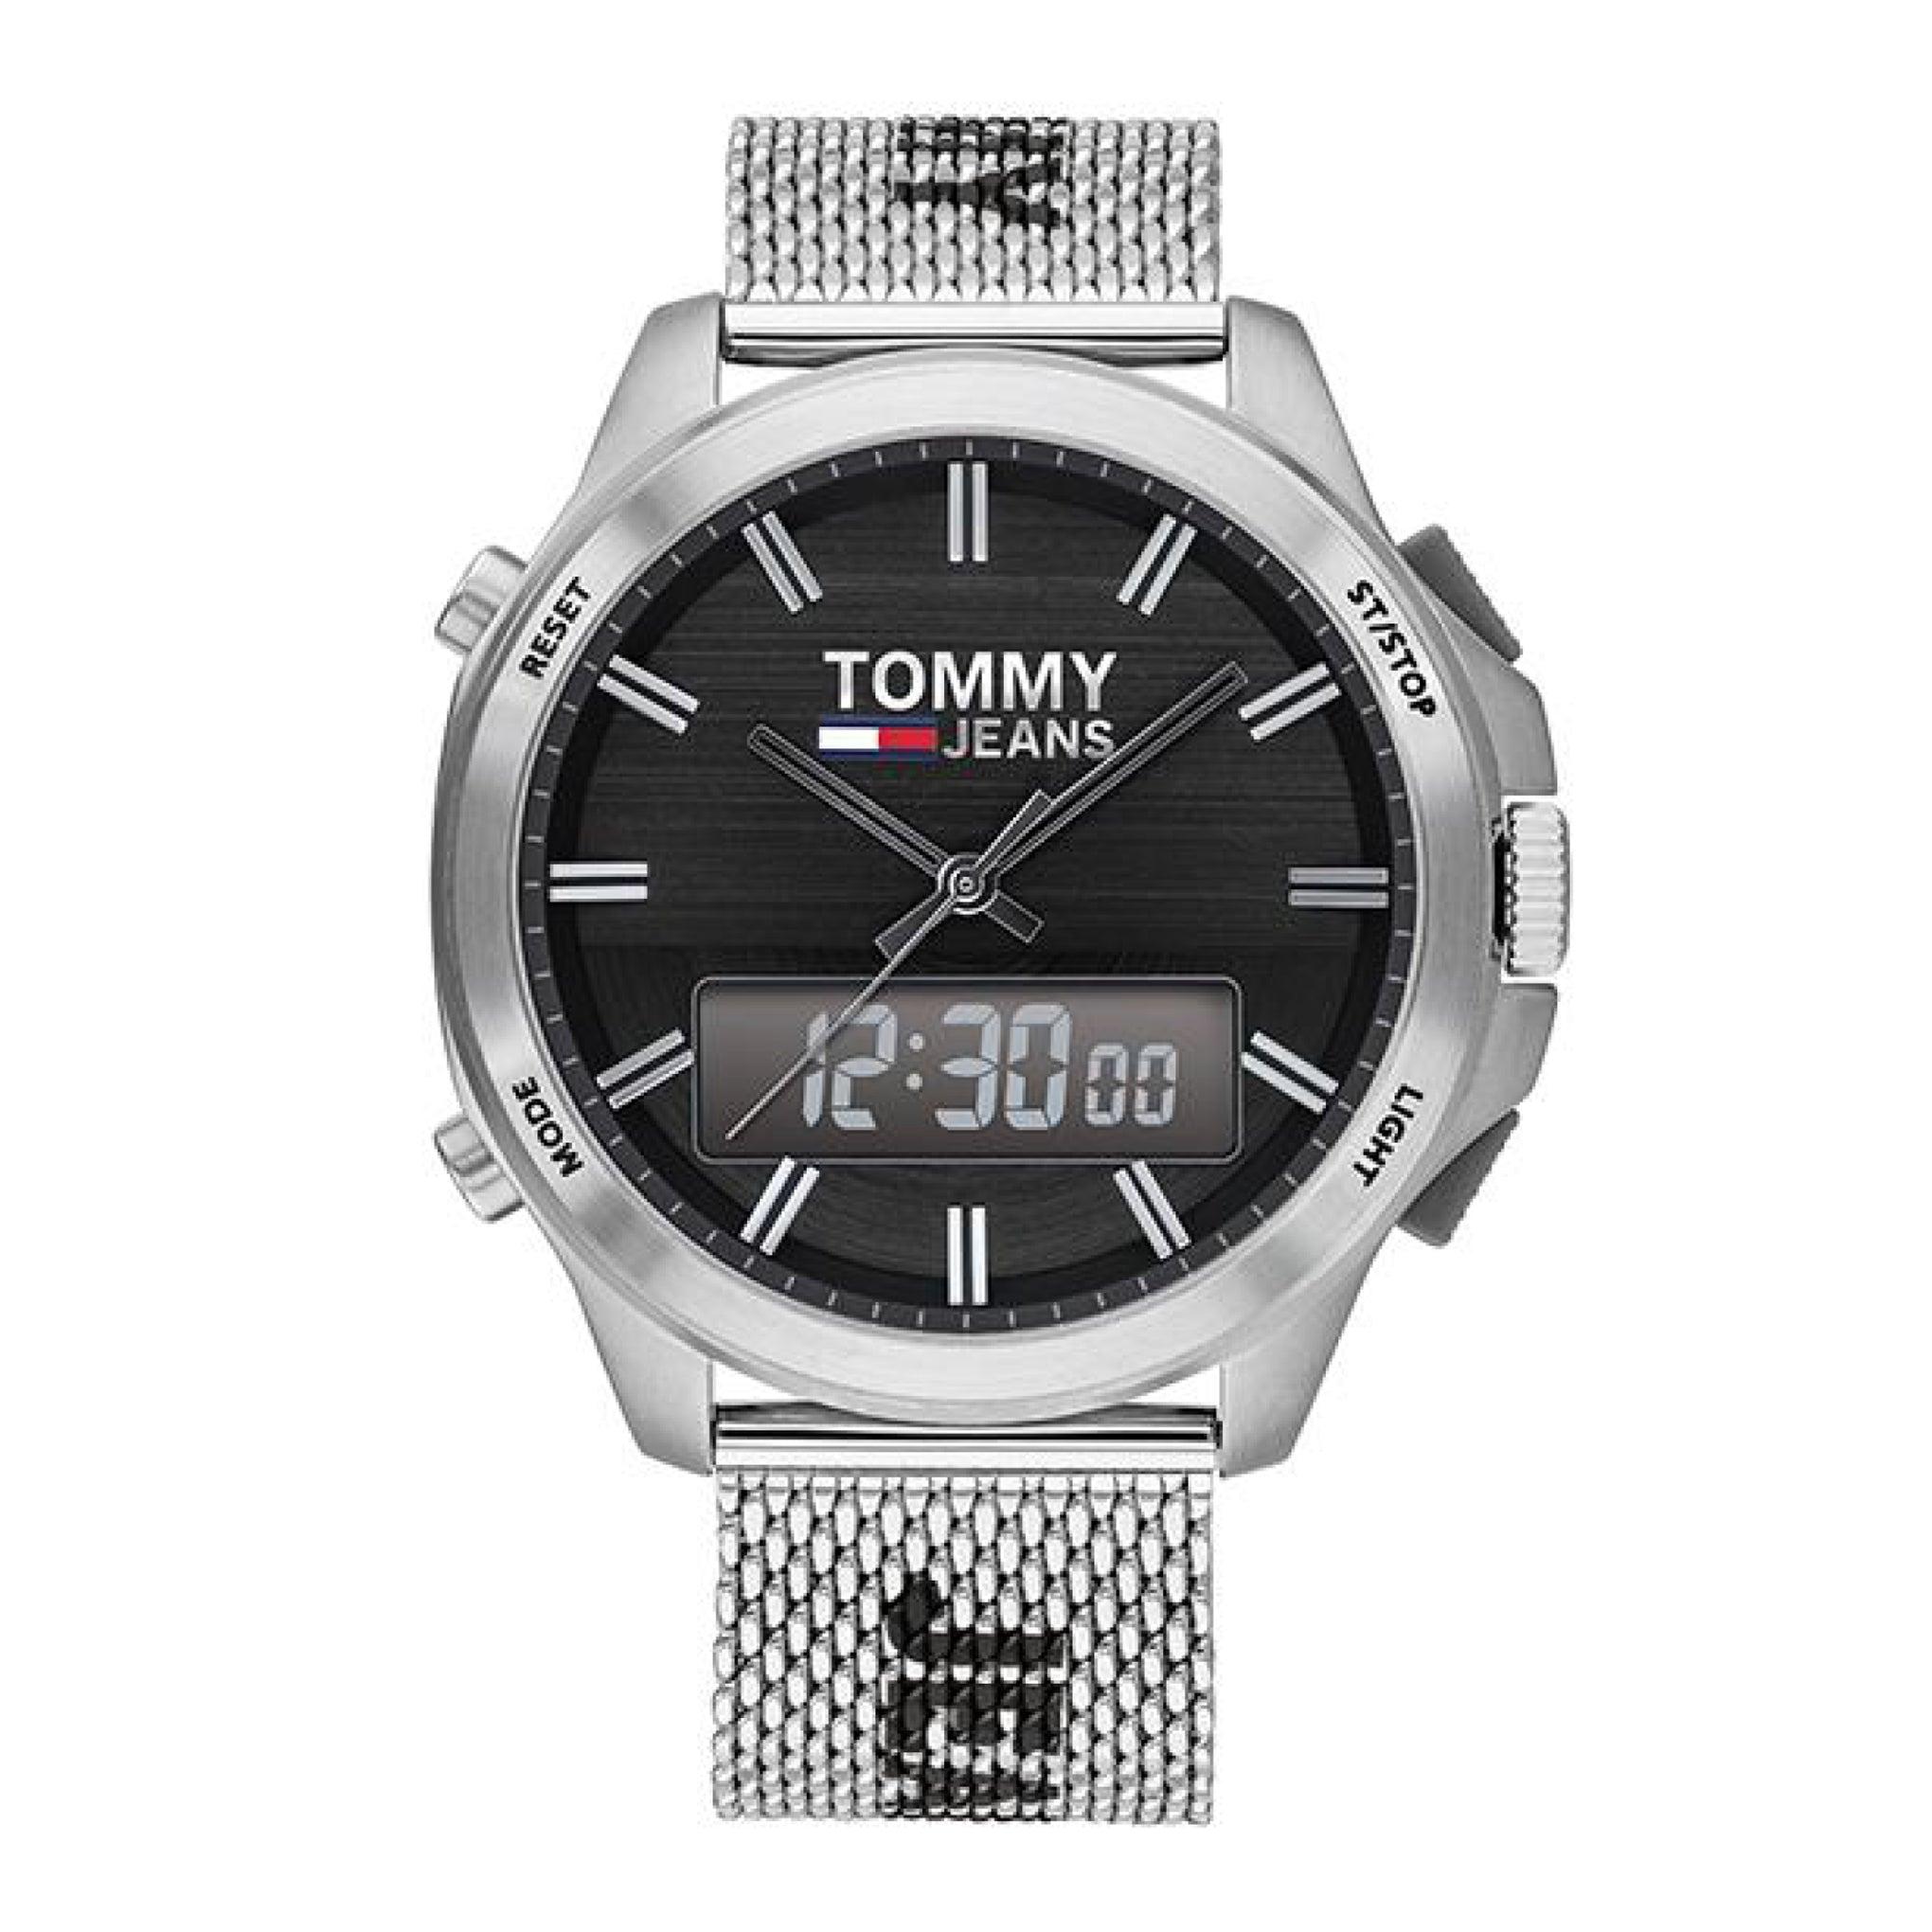 ساعة رجالية من تومي هيلفيغر Tommy Hilfiger Tommy Jeans Men's Black Dial Stainless Steel Watch 1791765